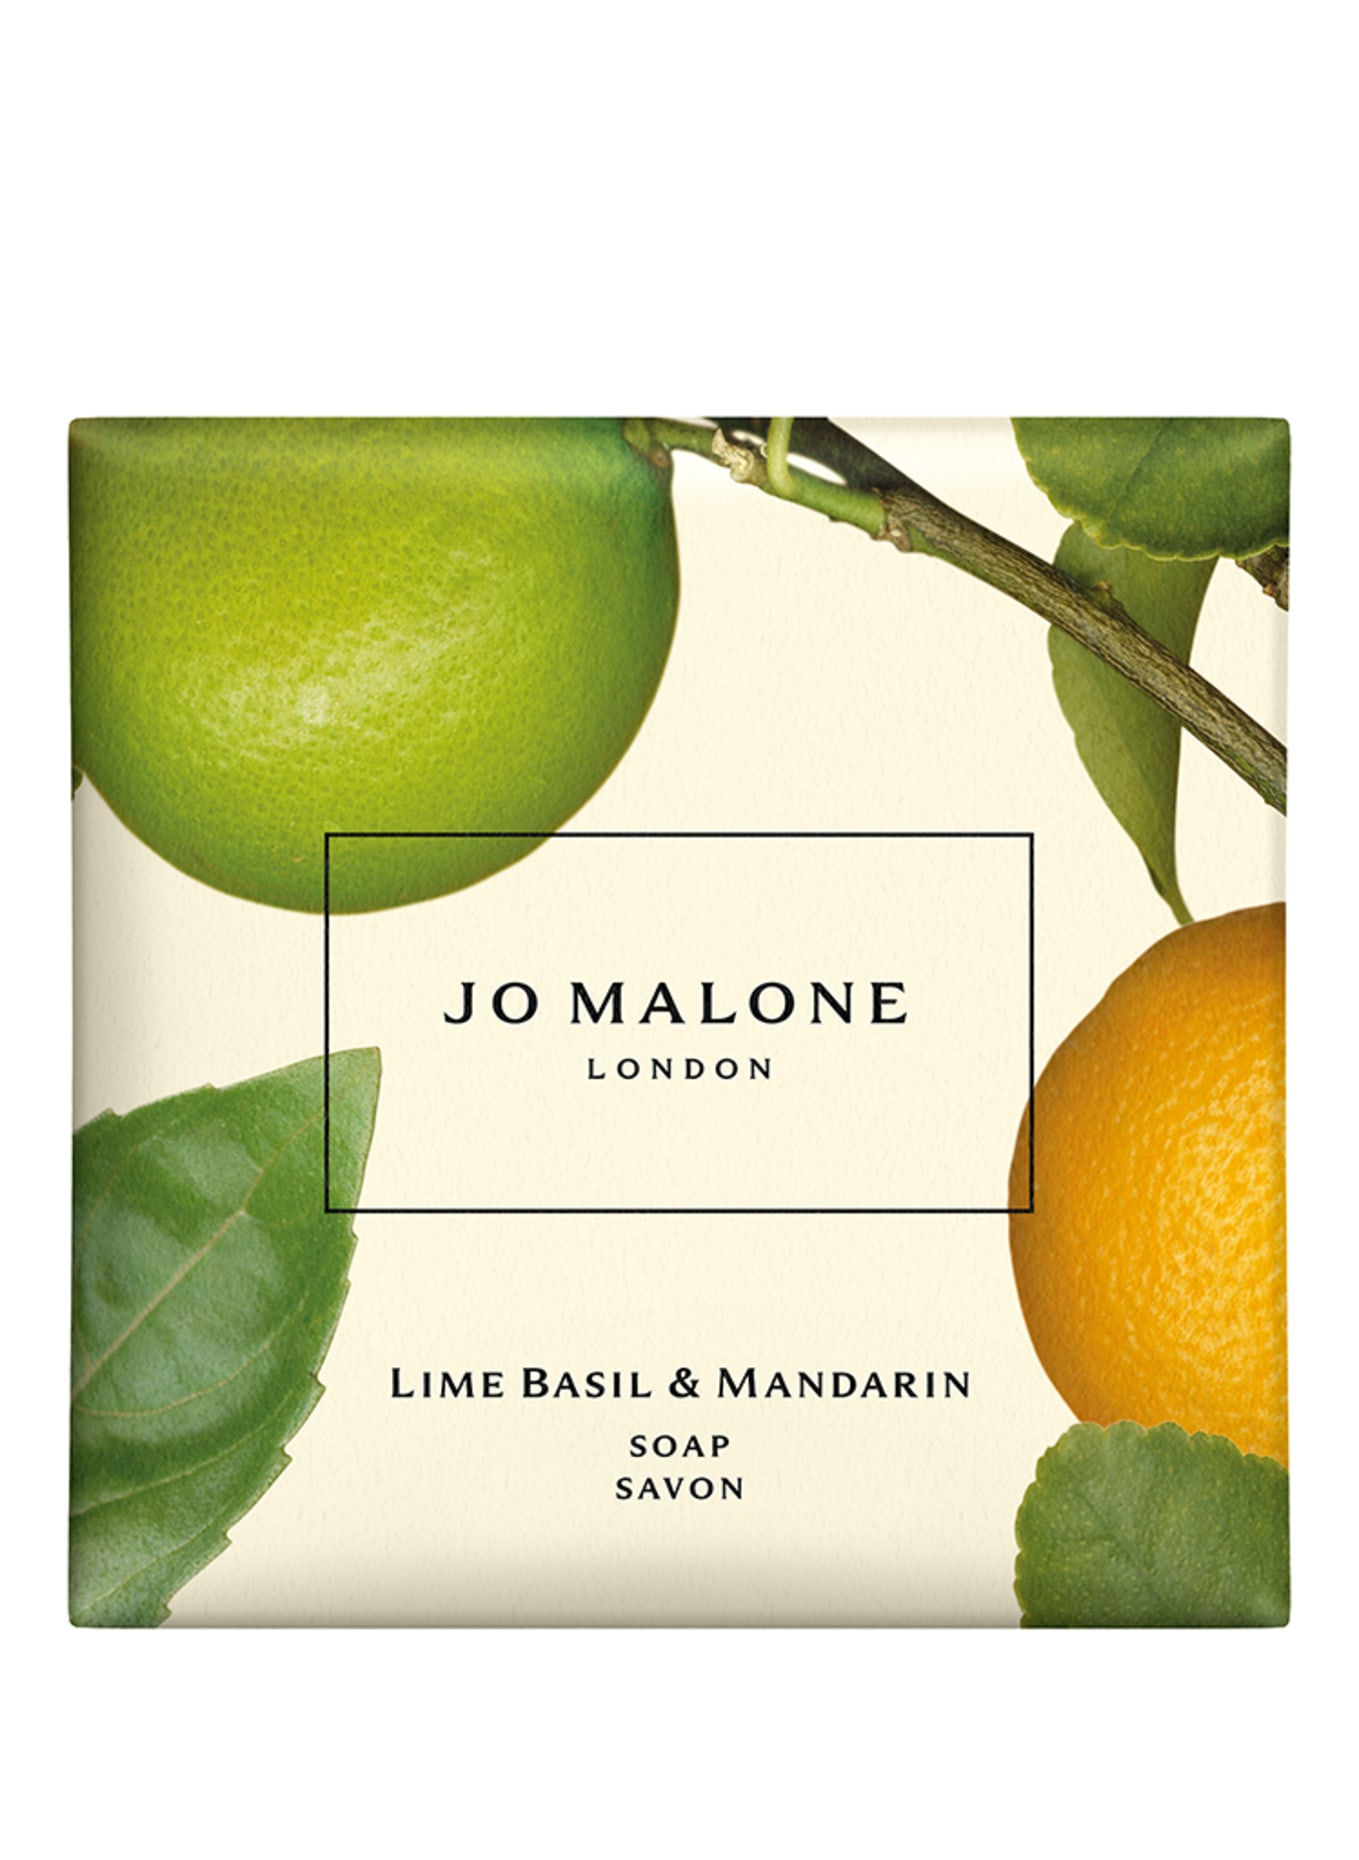 JO MALONE LONDON LIME BASIL & MANDARIN SOAP (Bild 1)